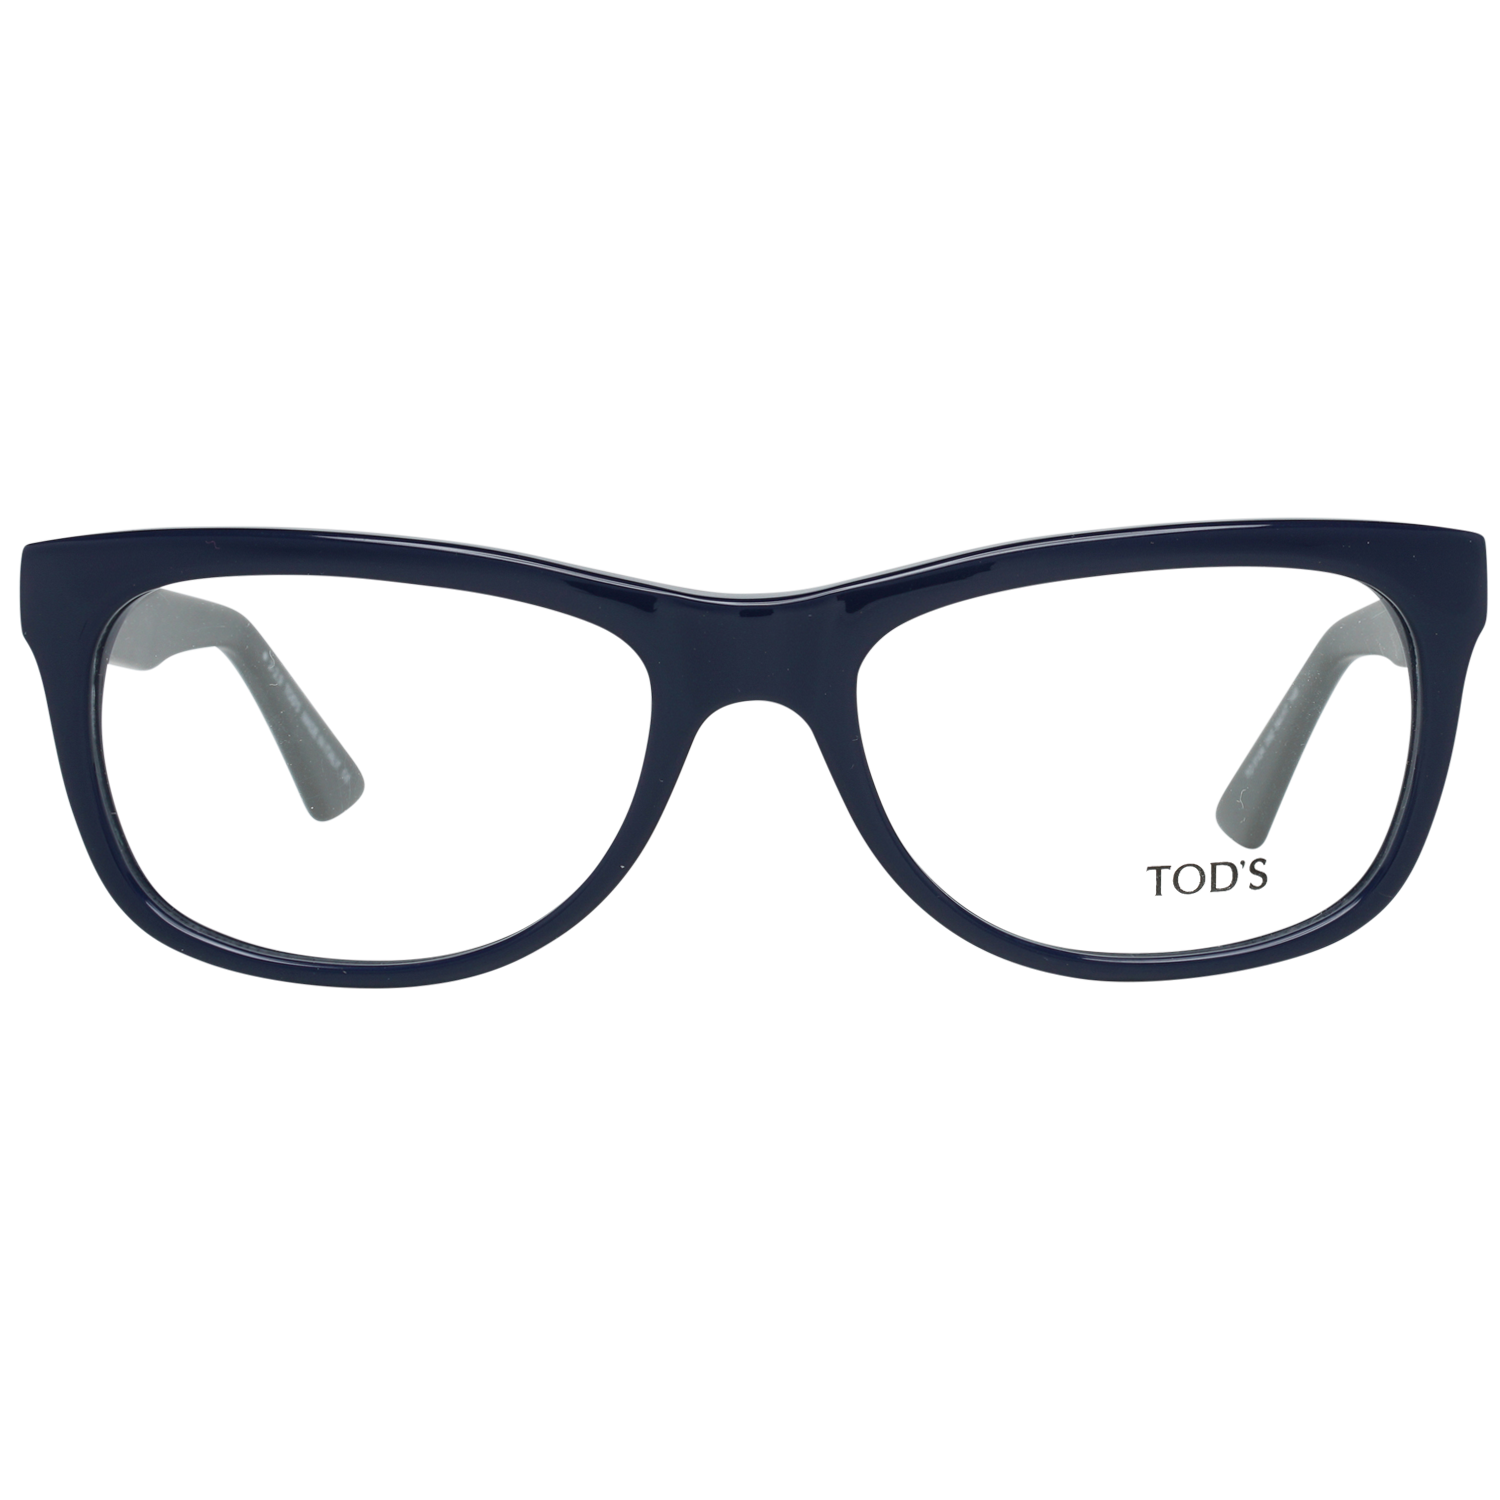 Tods Frames Tods Glasses Men's Blue Rectangle Frames TO5124 092 54mm Eyeglasses Eyewear UK USA Australia 